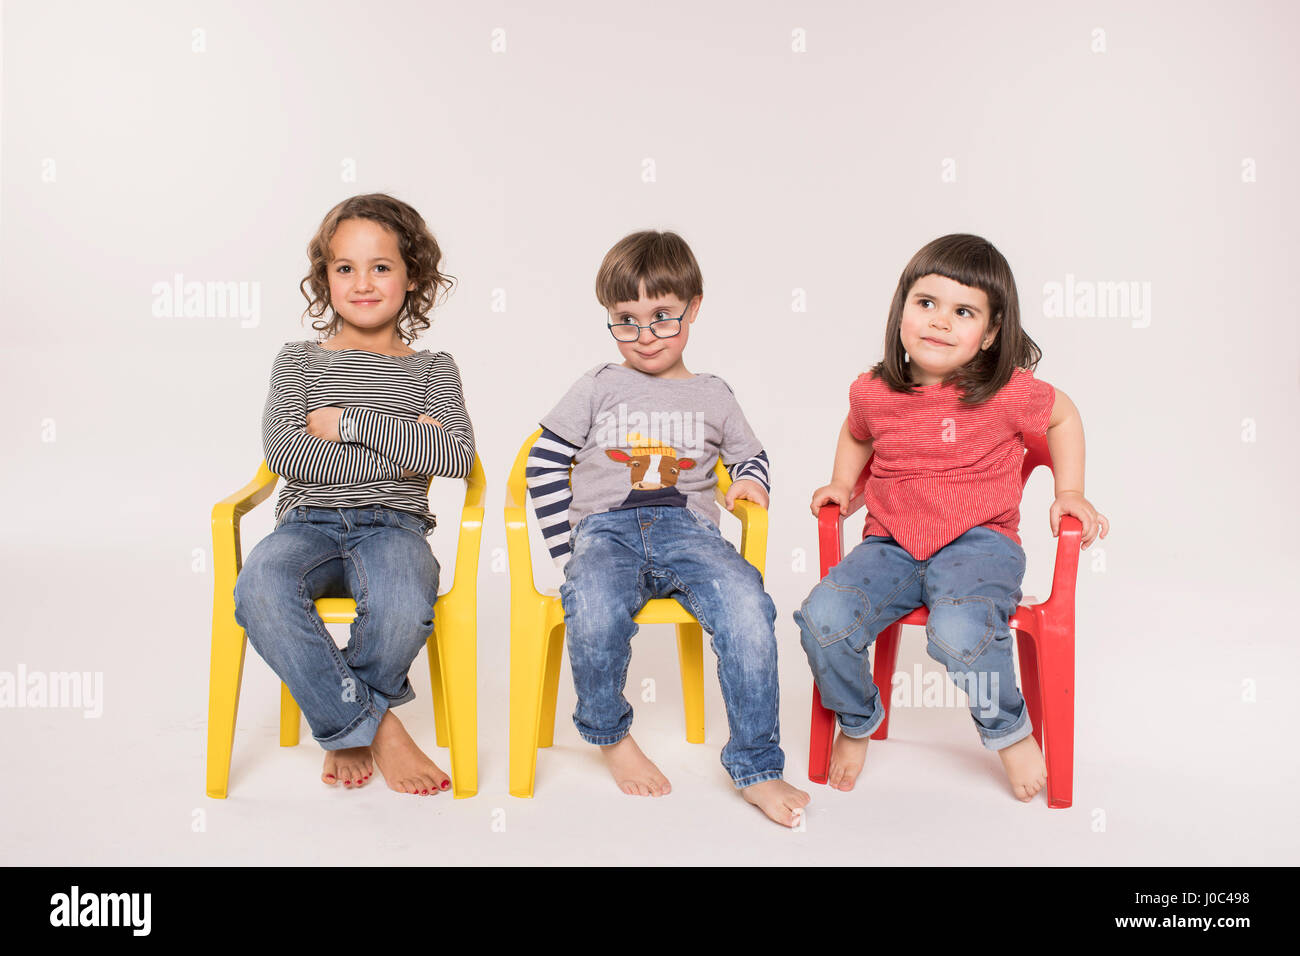 Retrato de tres niños sentados en sillas de colores, Foto de estudio Foto de stock